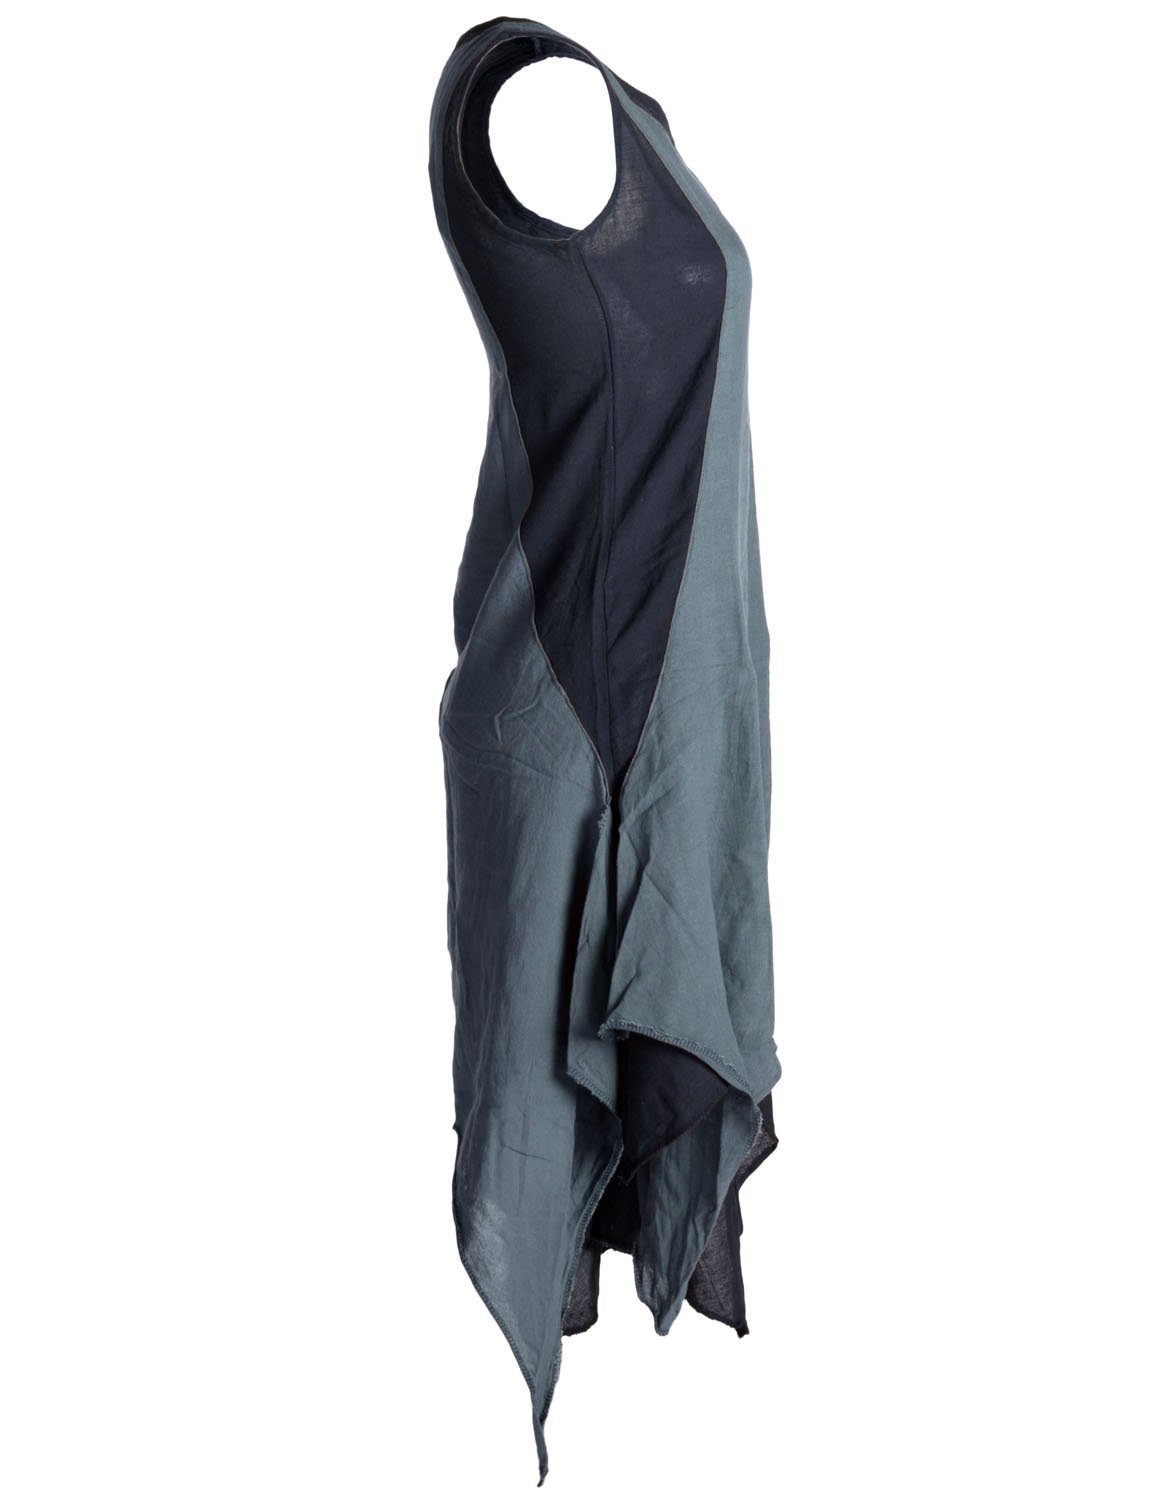 Vishes Sommerkleid Baumwolle Style Hippie Goa, Boho, handgewebte Lagenlook Ärmelloses Kleid schwarz-grau